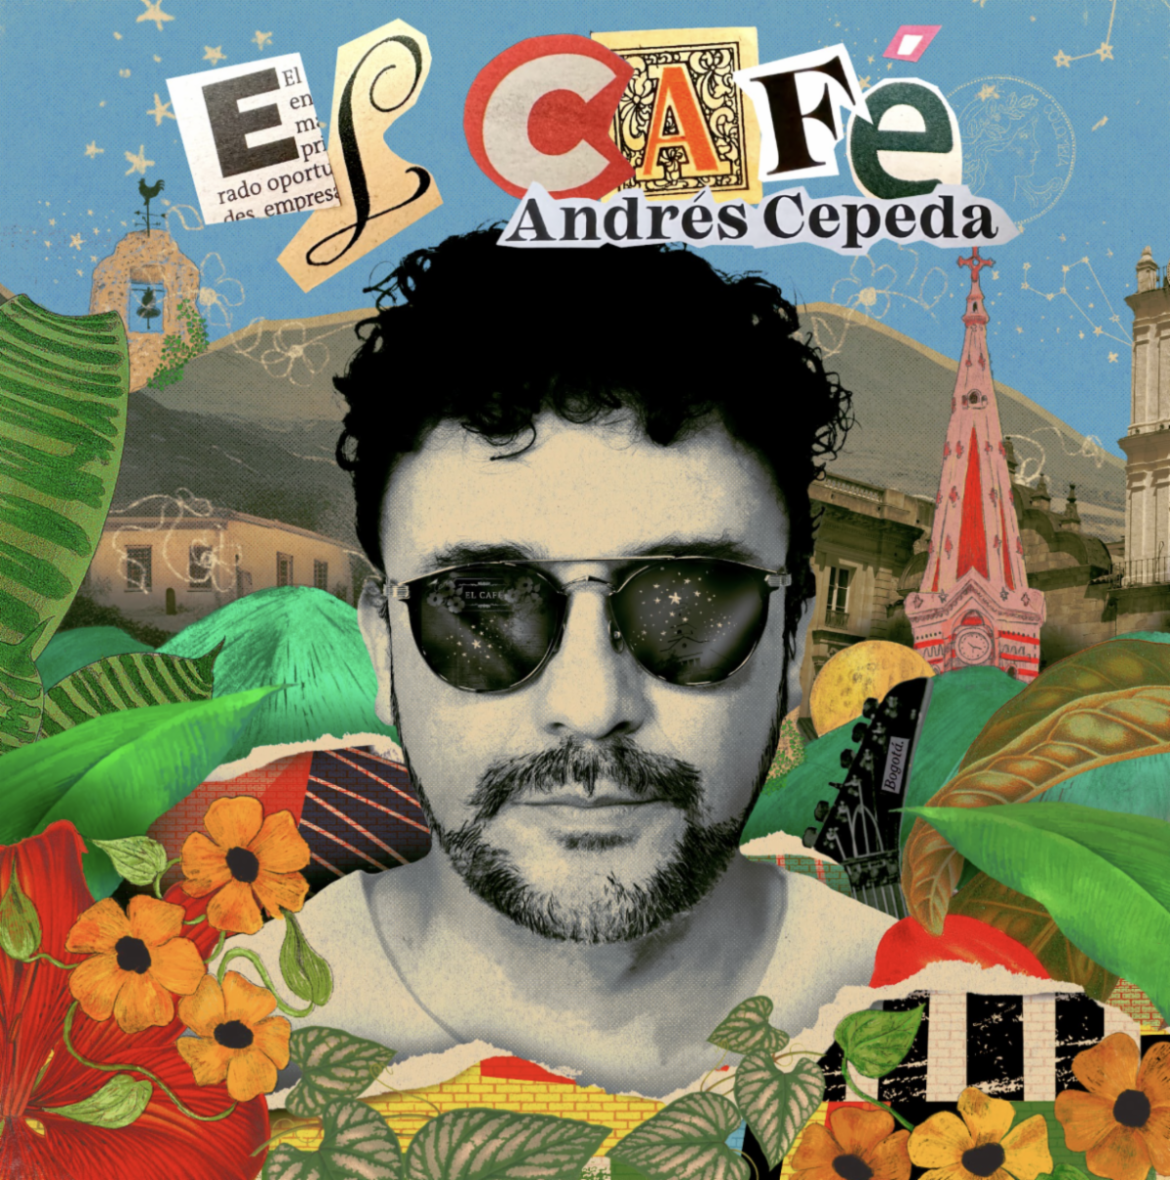 Andrés Cepeda retoma un primer amor y revive su historia en “El Café” el primer sencillo de su próximo álbum